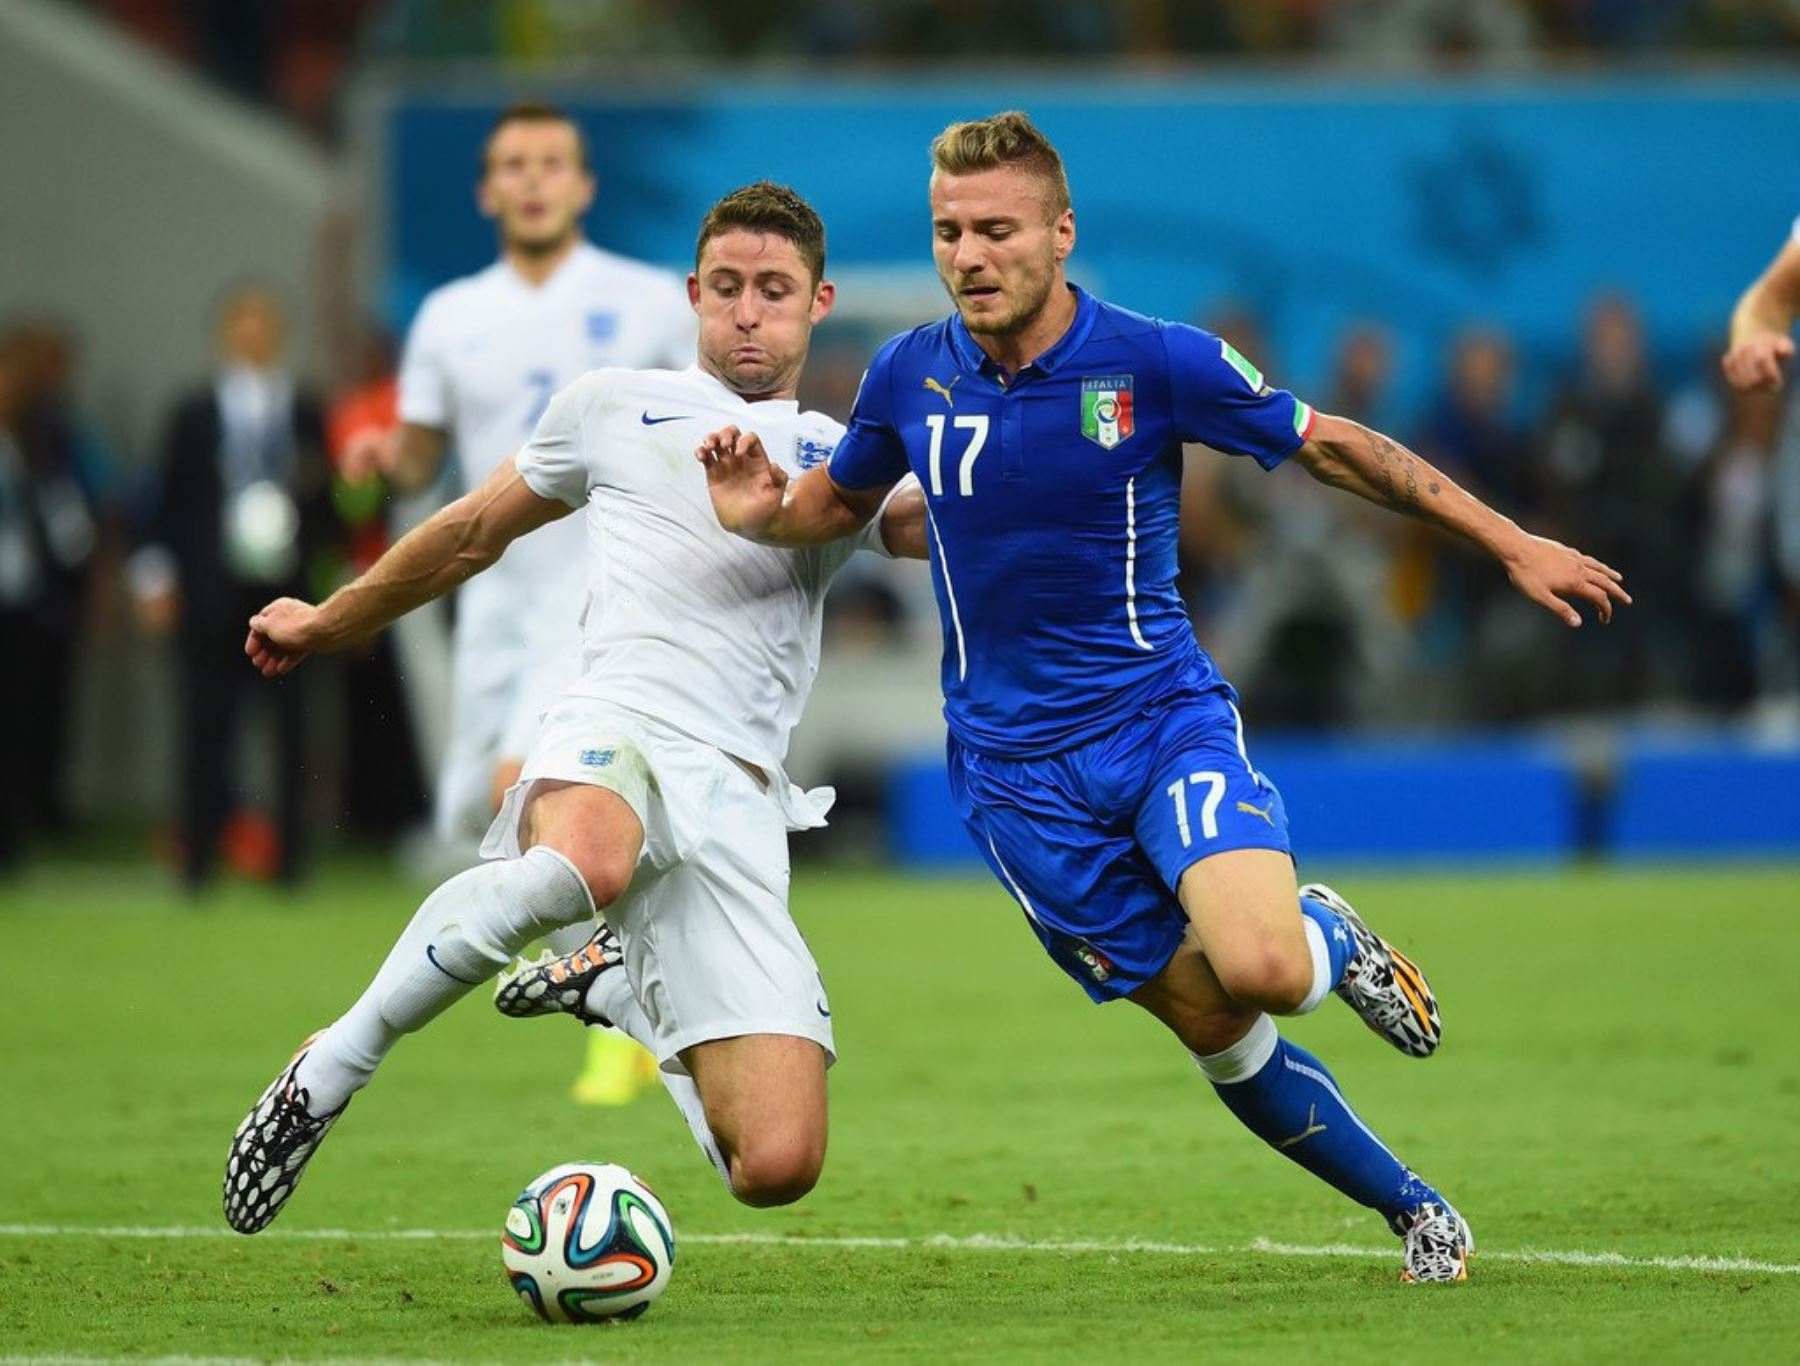 La final de la Eurocopa 2020 entre Italia e Inglaterra atrae el interés de todos los estamentos de la sociedad mundial